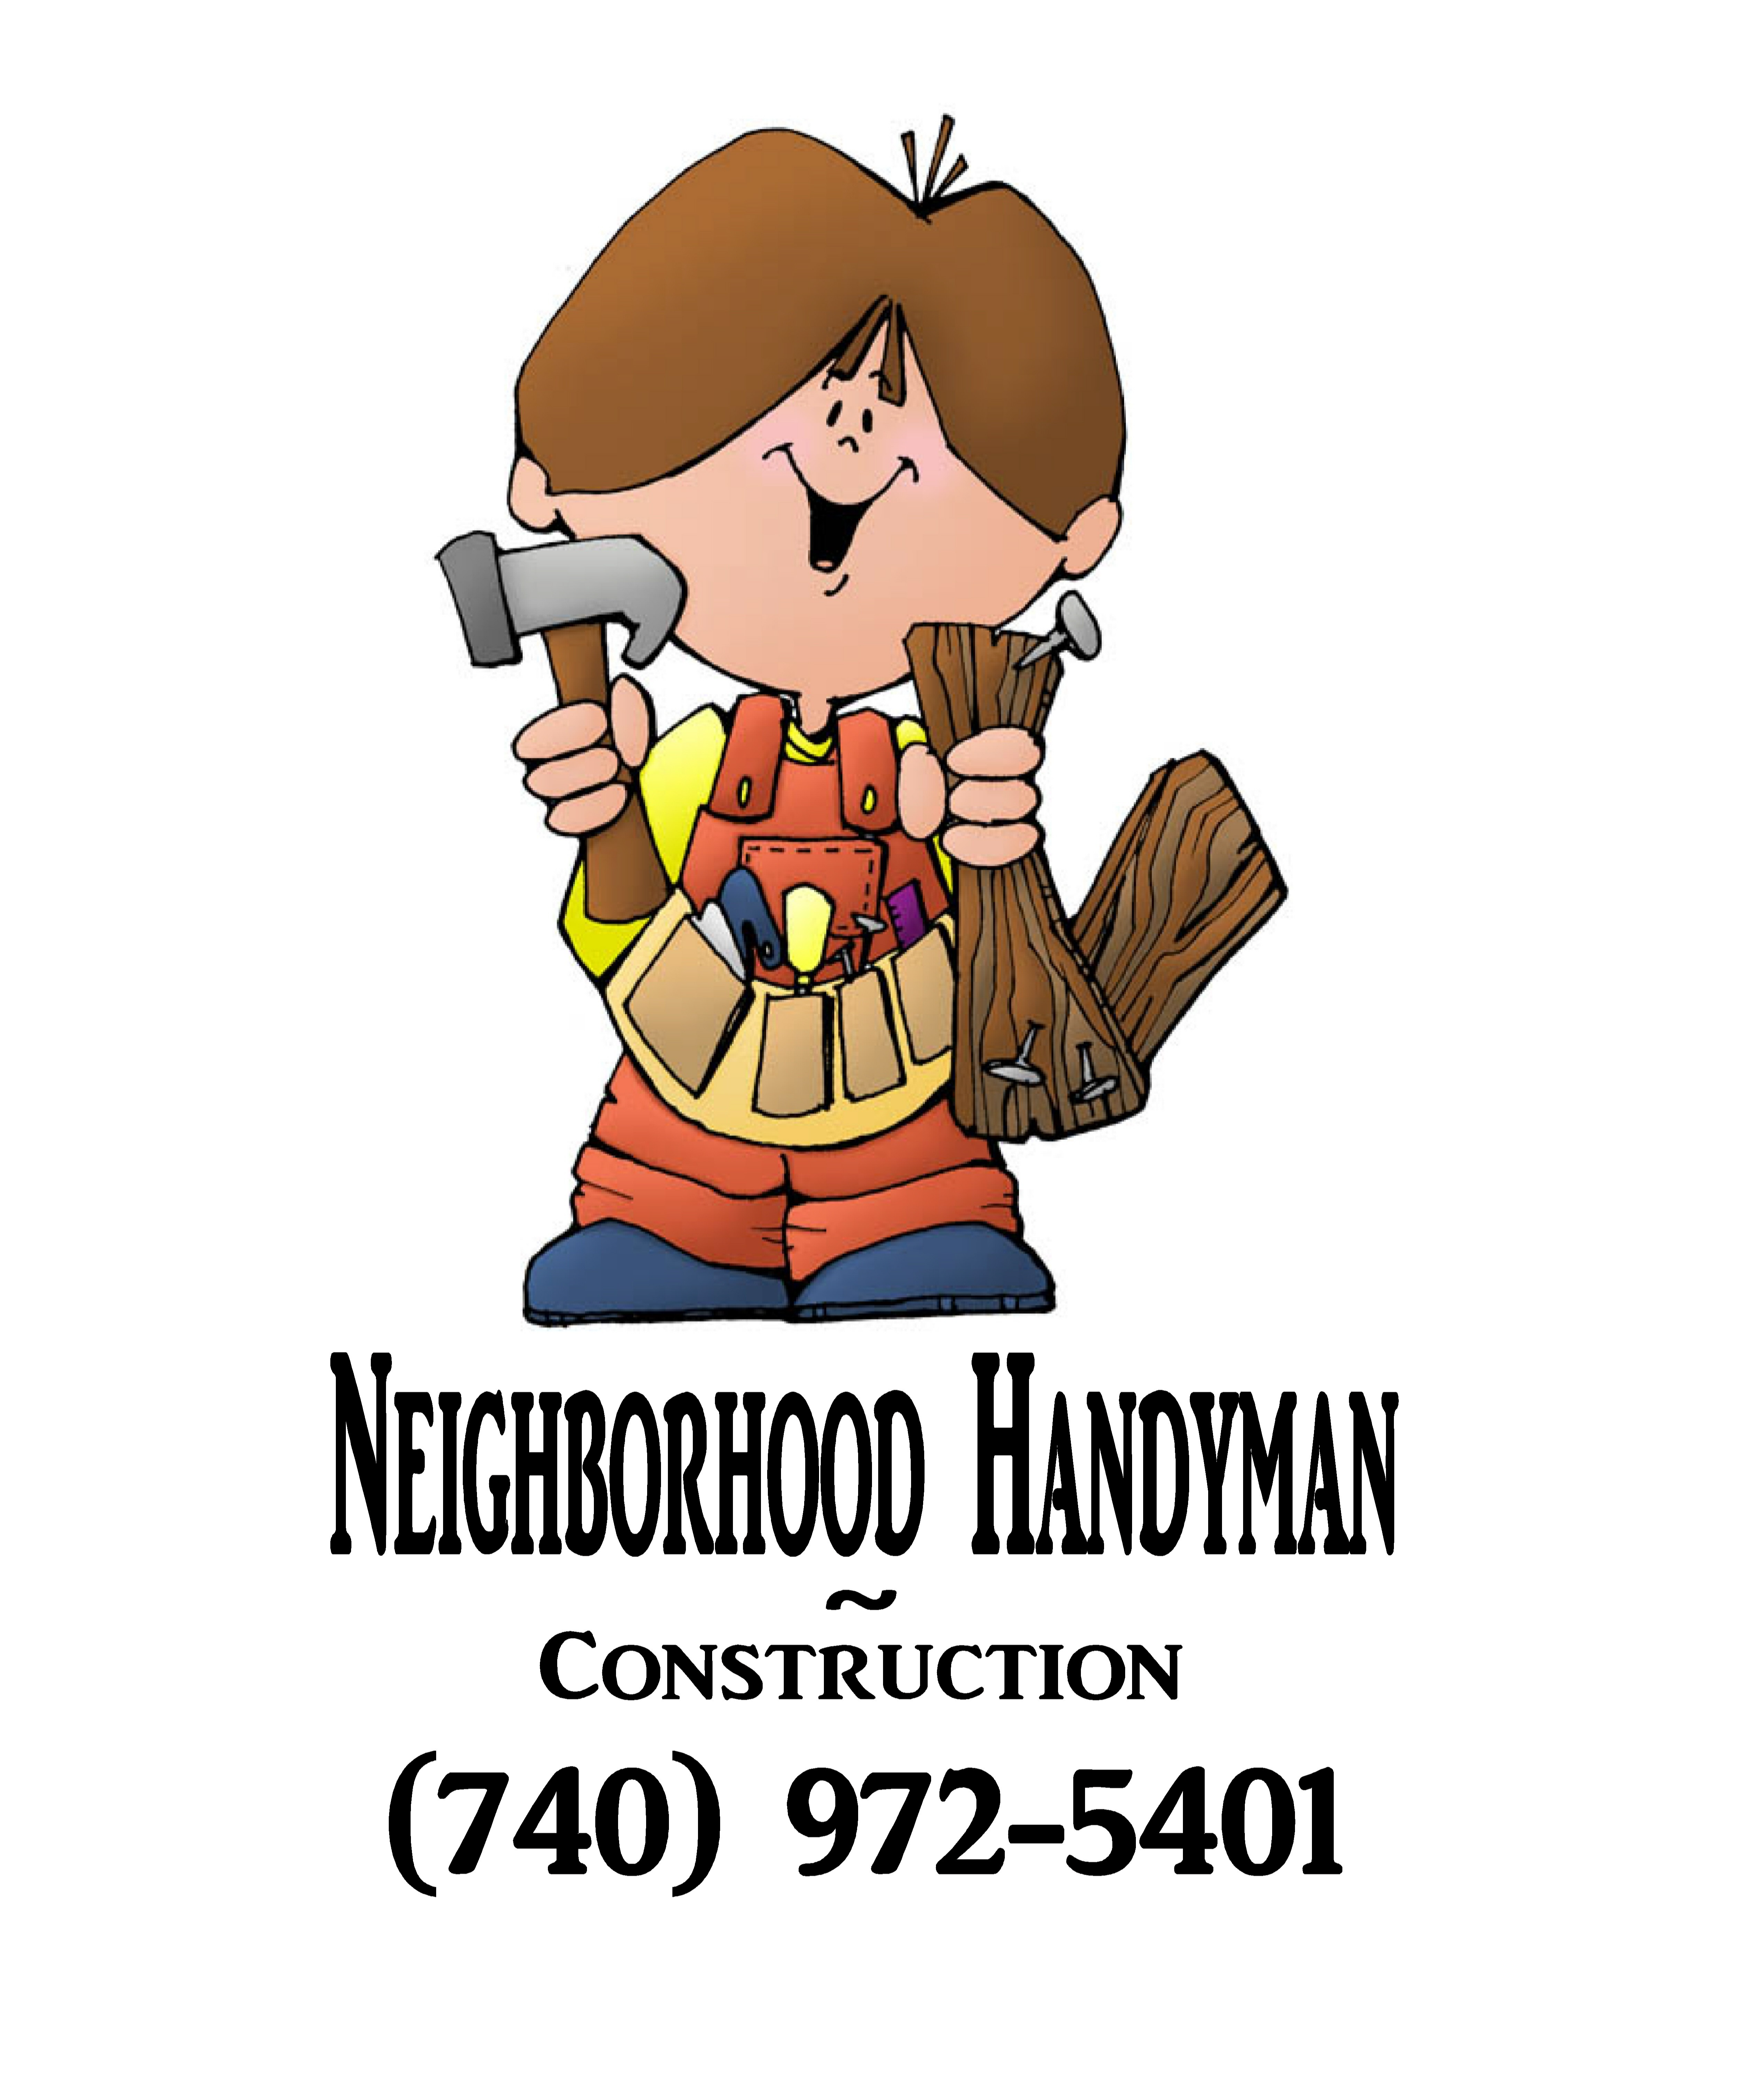 Neighborhood Handman